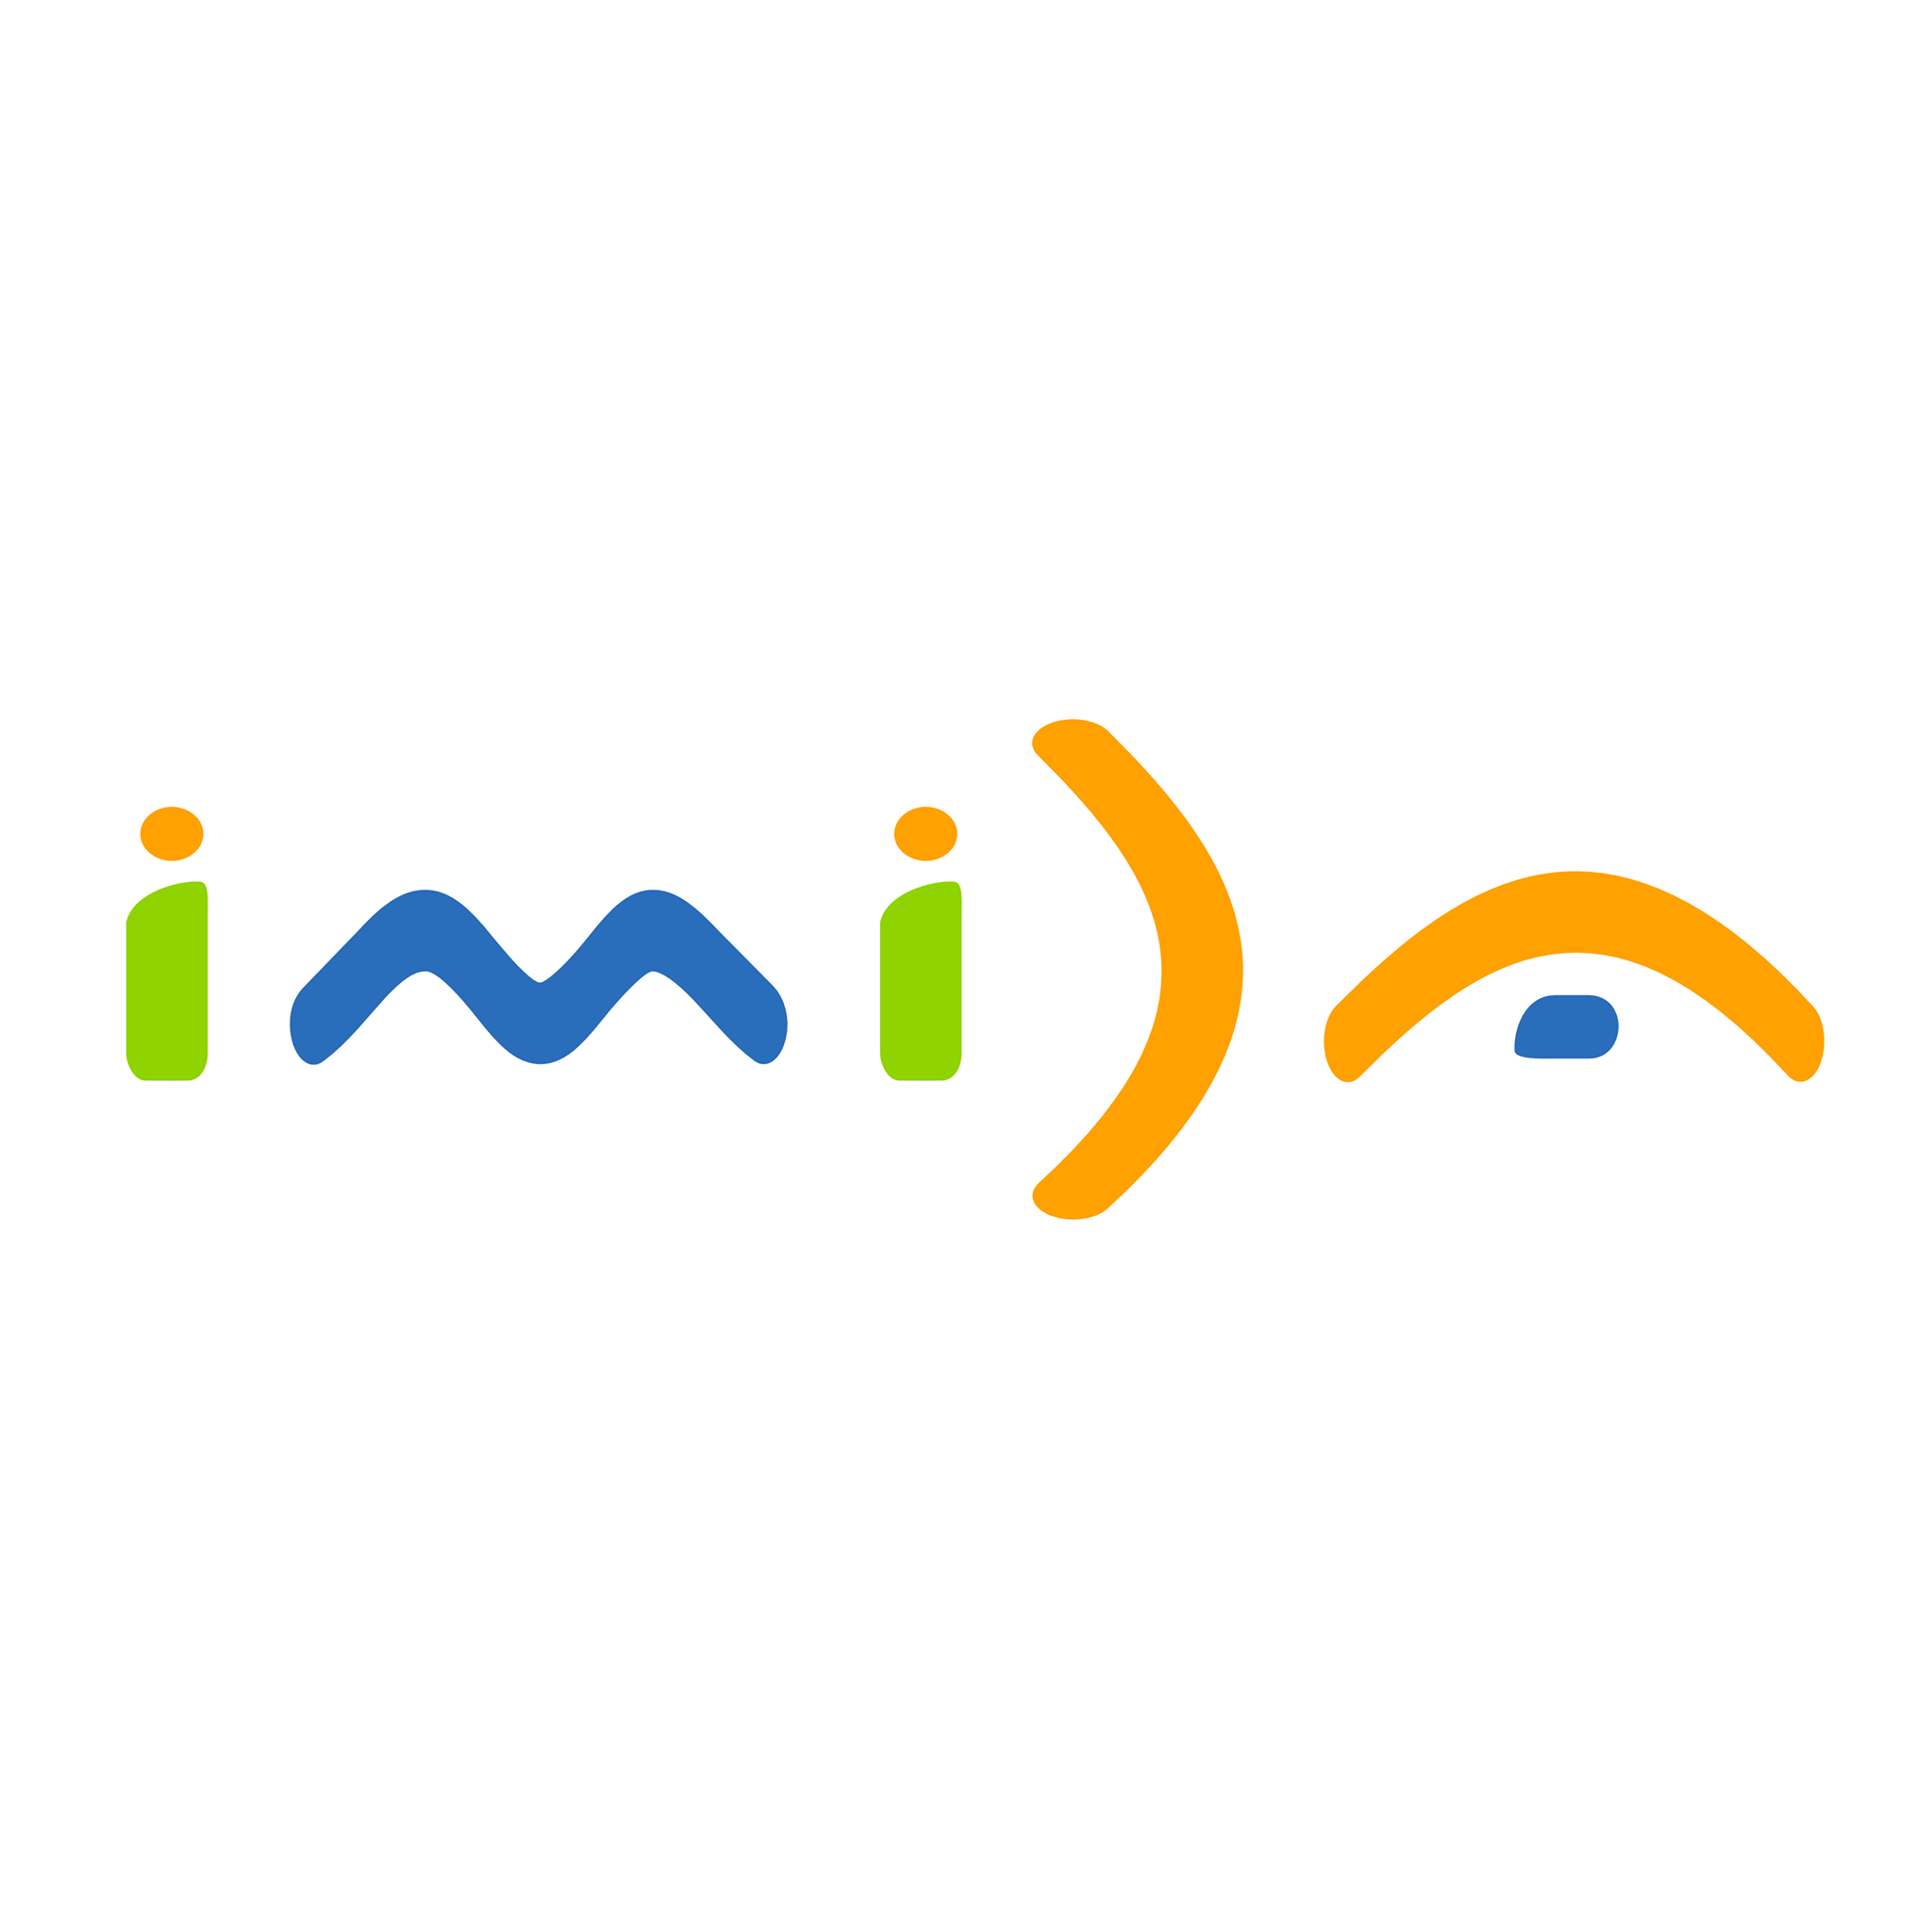 IMIDA logo